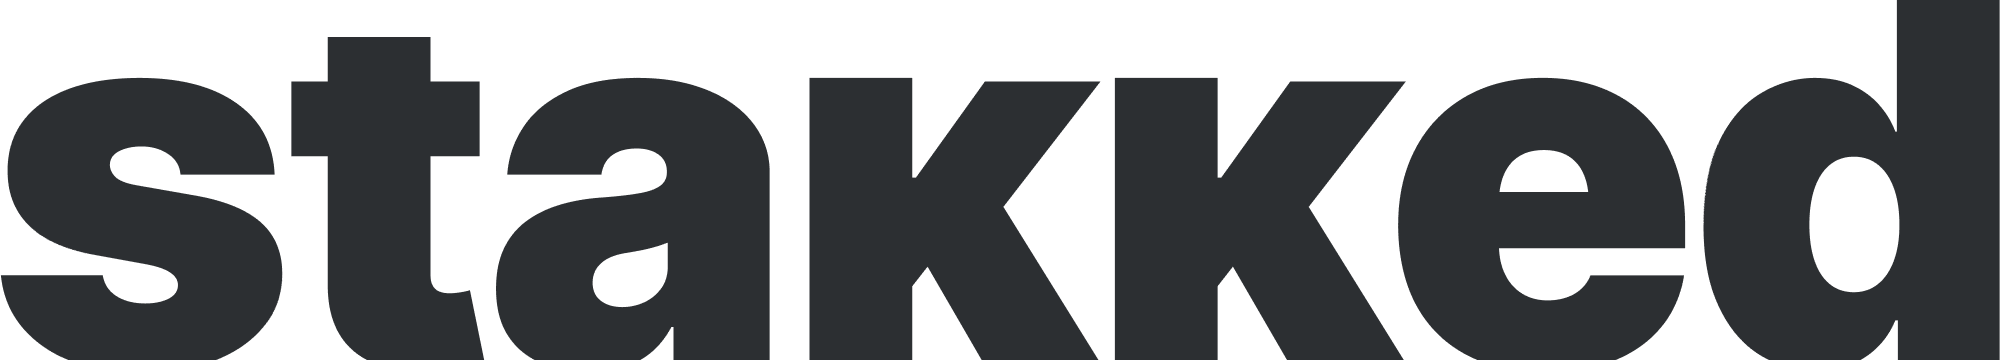 STAKKED logo